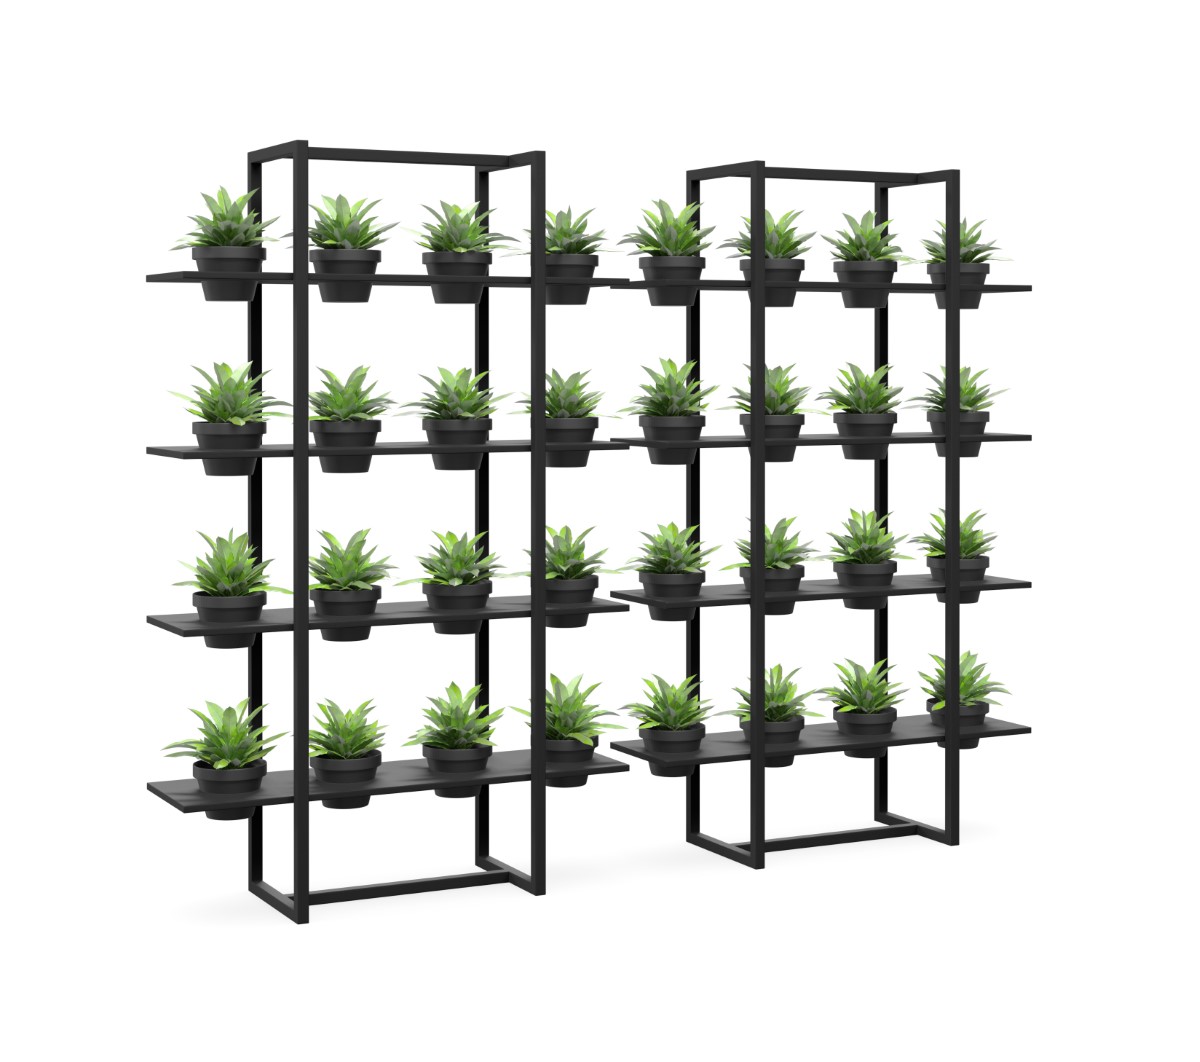 Breezeway Vertical Garden - 4 plants per row